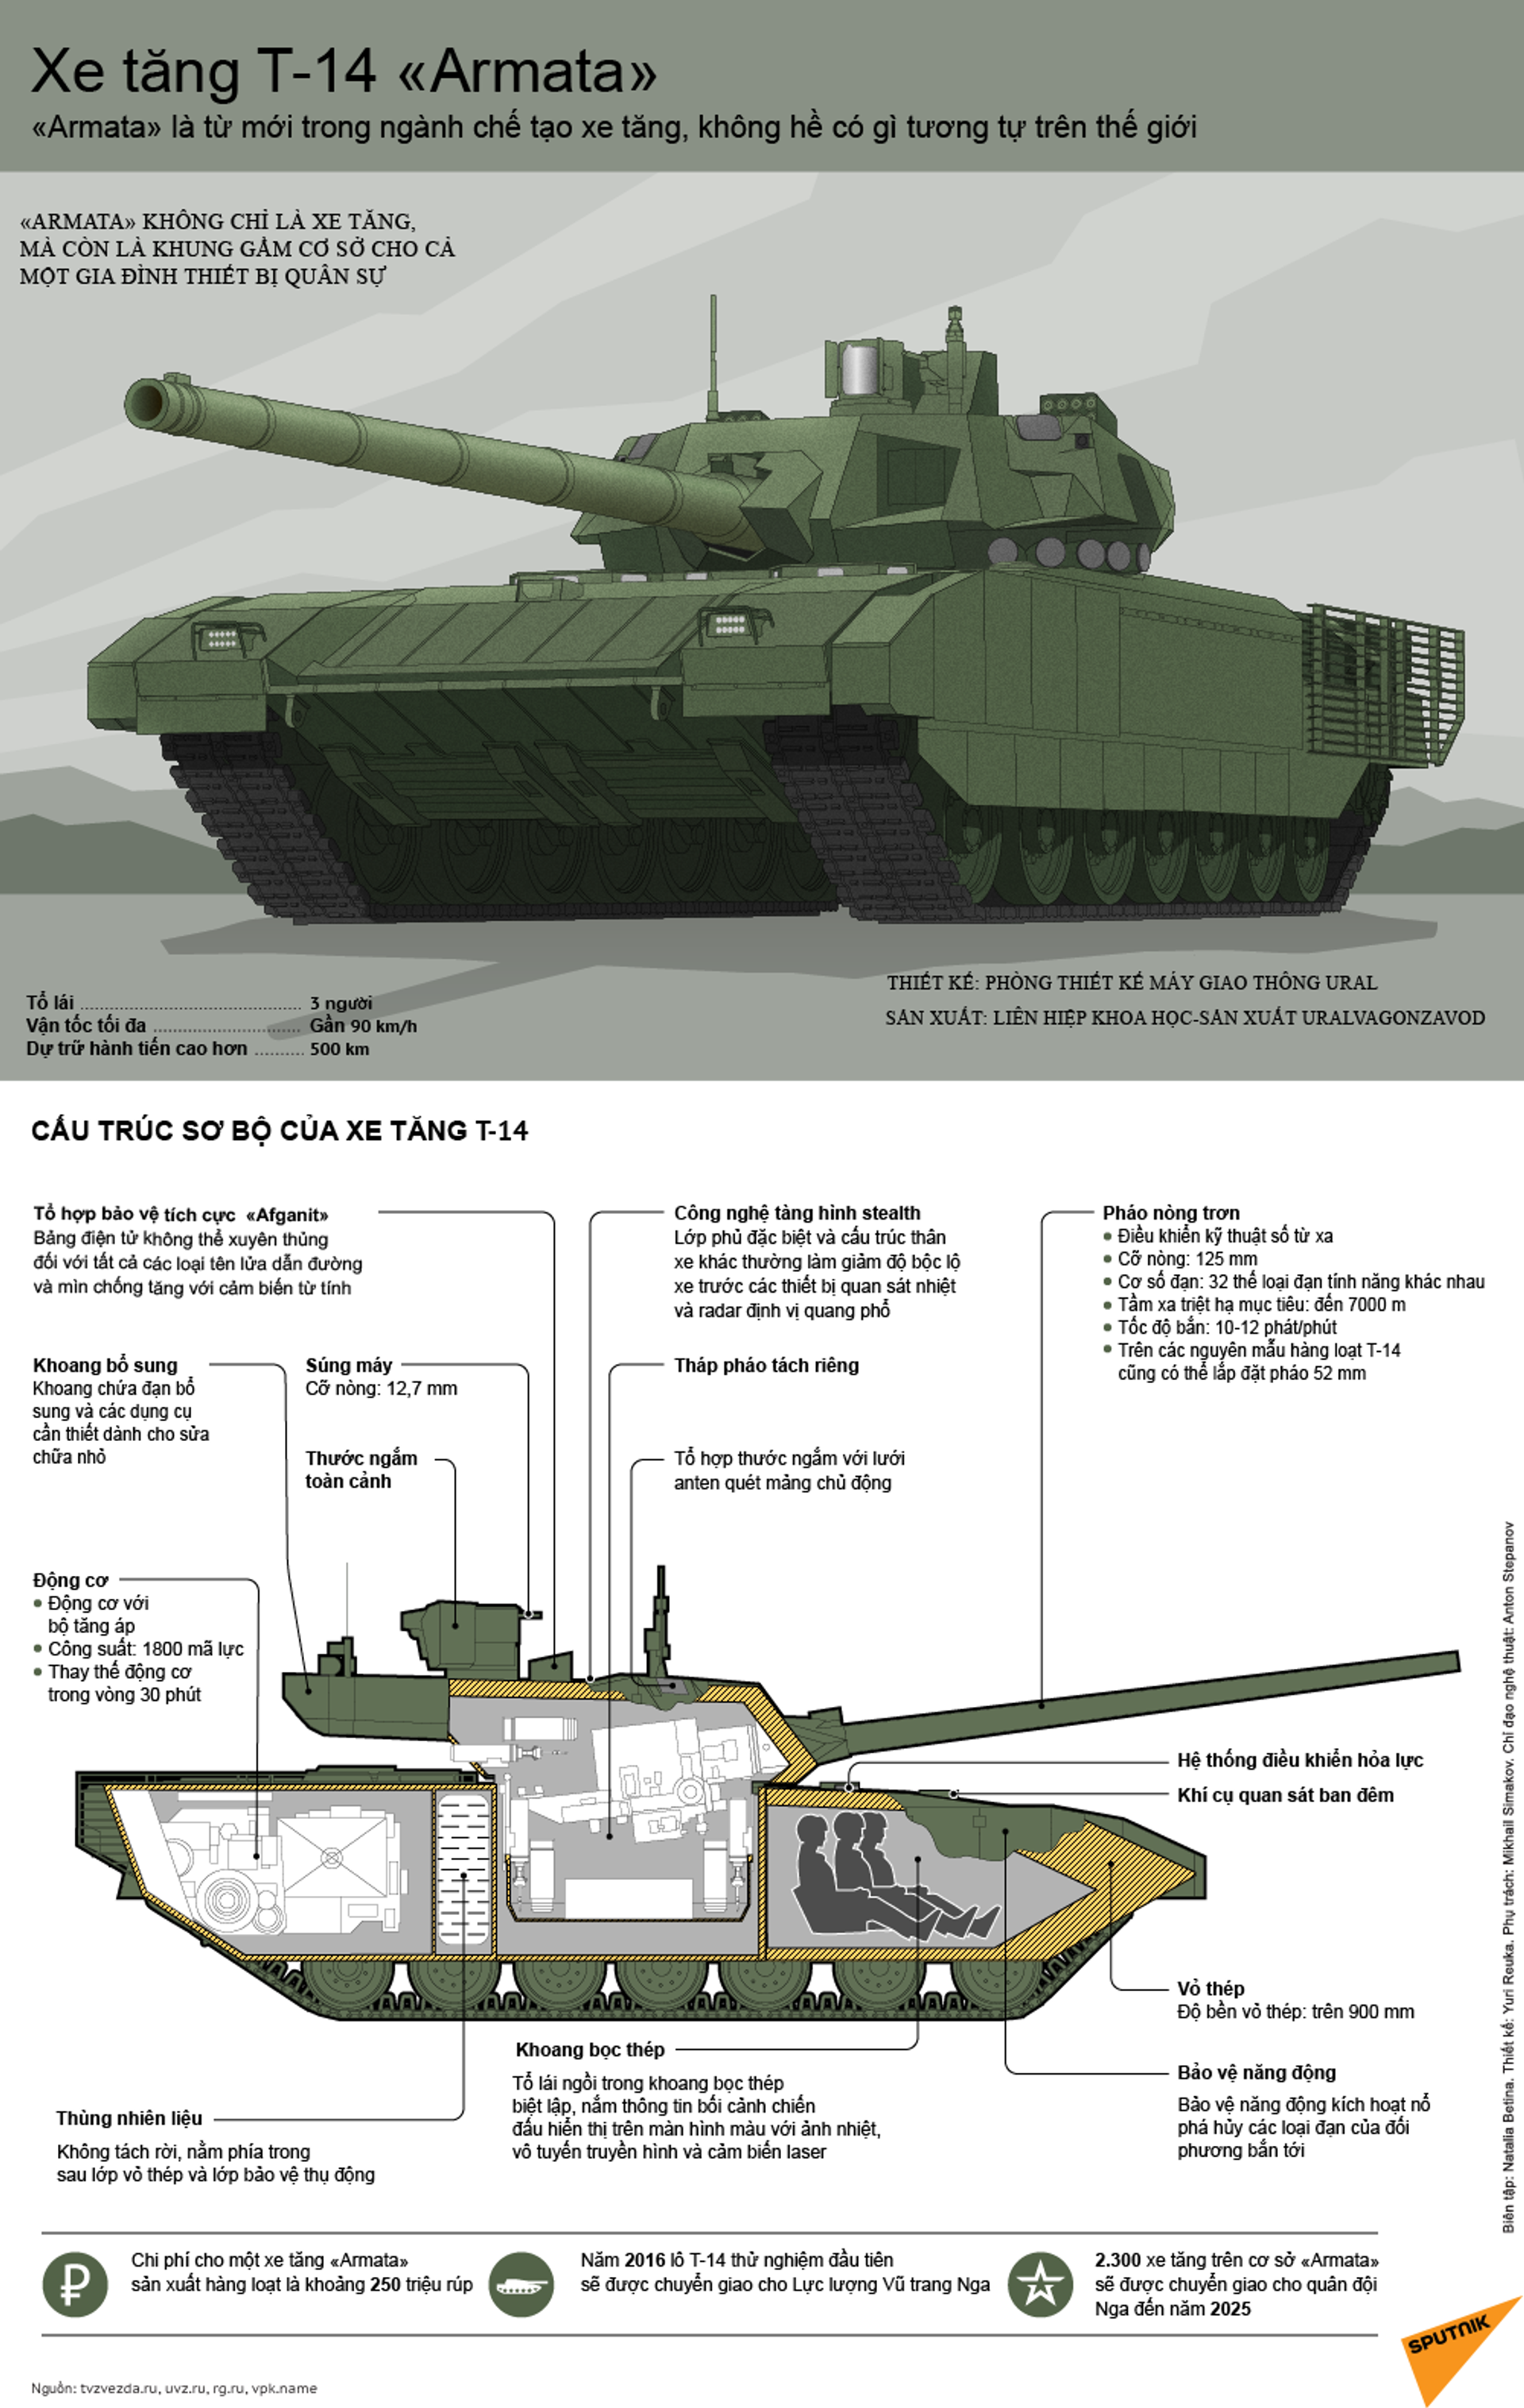 Lần đầu tiên trong lịch sử chế tạo xe tăng: Armata tự tìm mục tiêu mà không cần sự tham gia của kíp lái - Sputnik Việt Nam, 1920, 25.02.2021